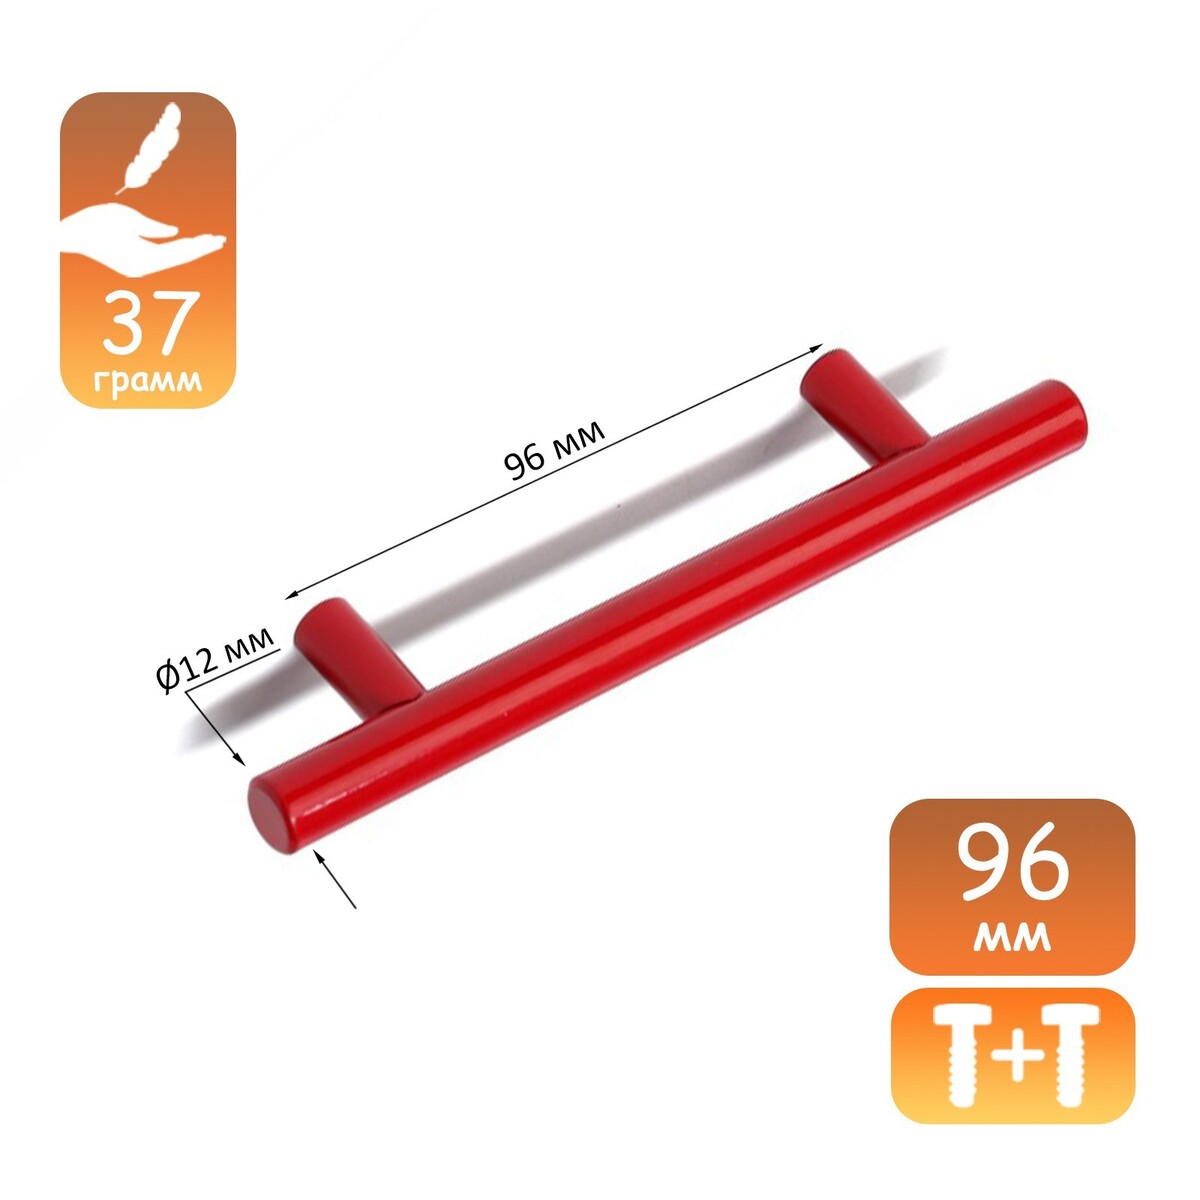 Ручка рейлинг cappio, облегченная, d=12 мм, м/о 96 мм, цвет красный ручка рейлинг cappio облегченная d 12 мм м о 96 мм оранжевый